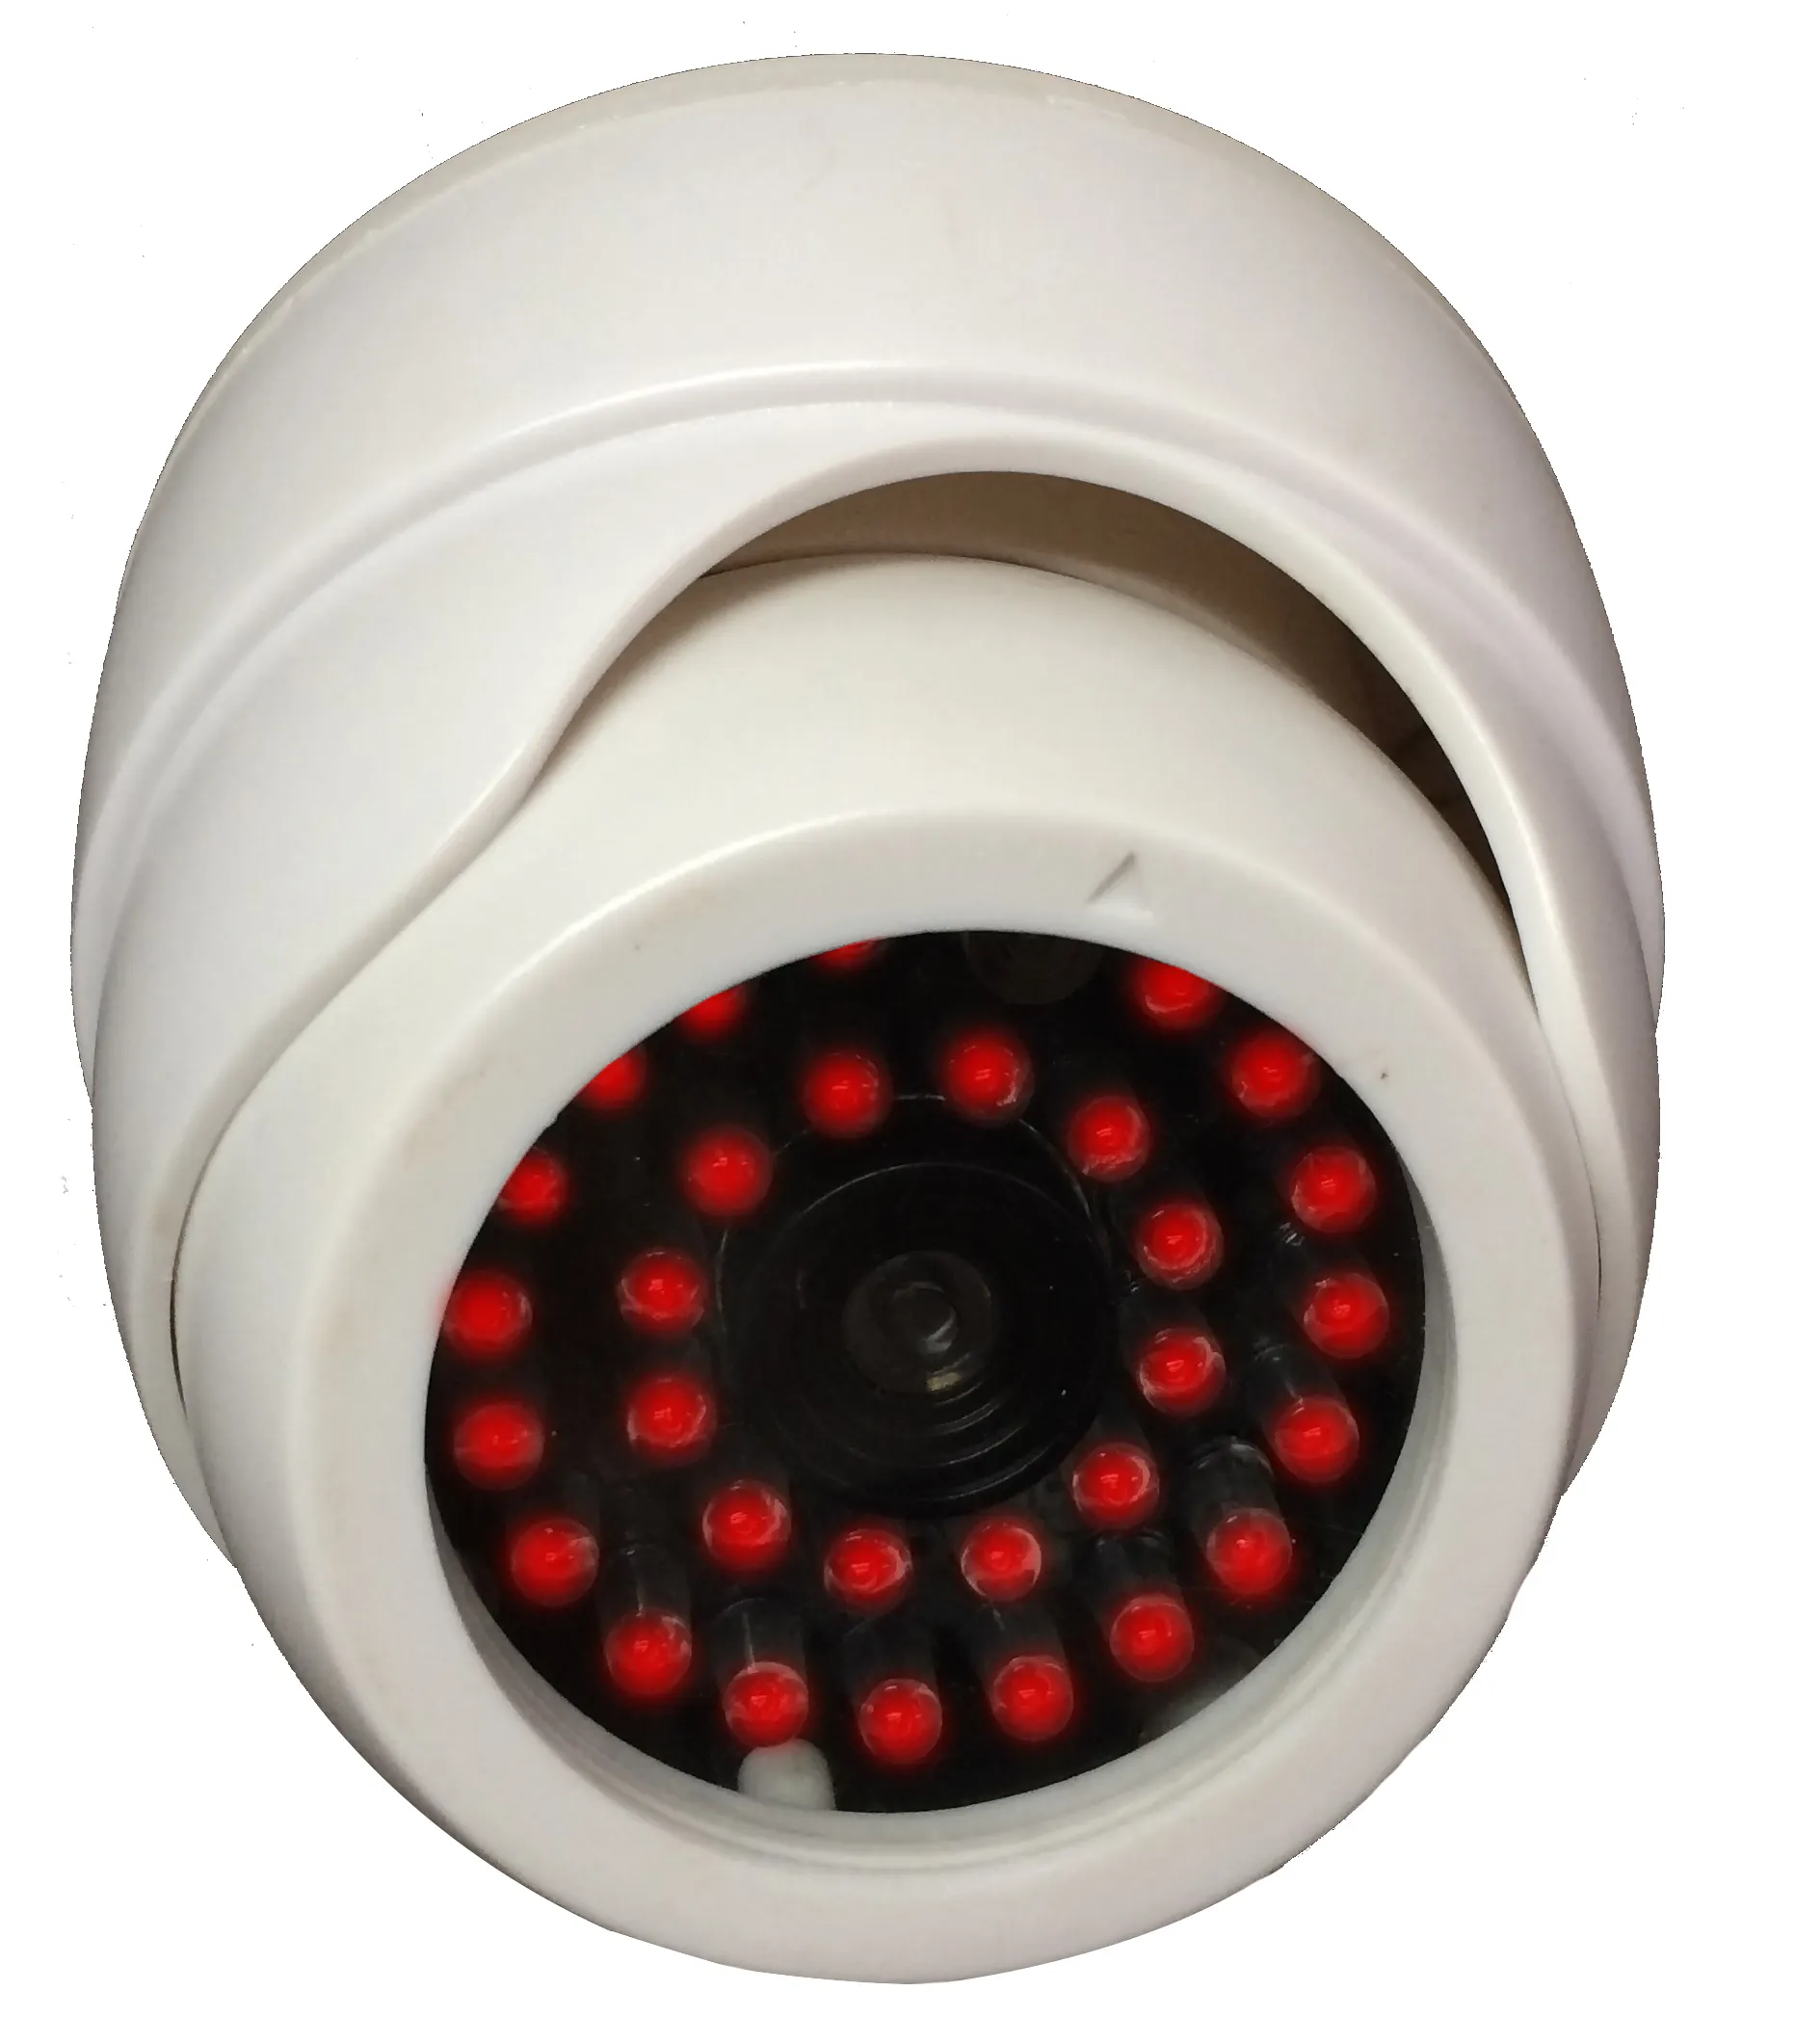 IR LED Light security camera fake CCTV dome dummy camera